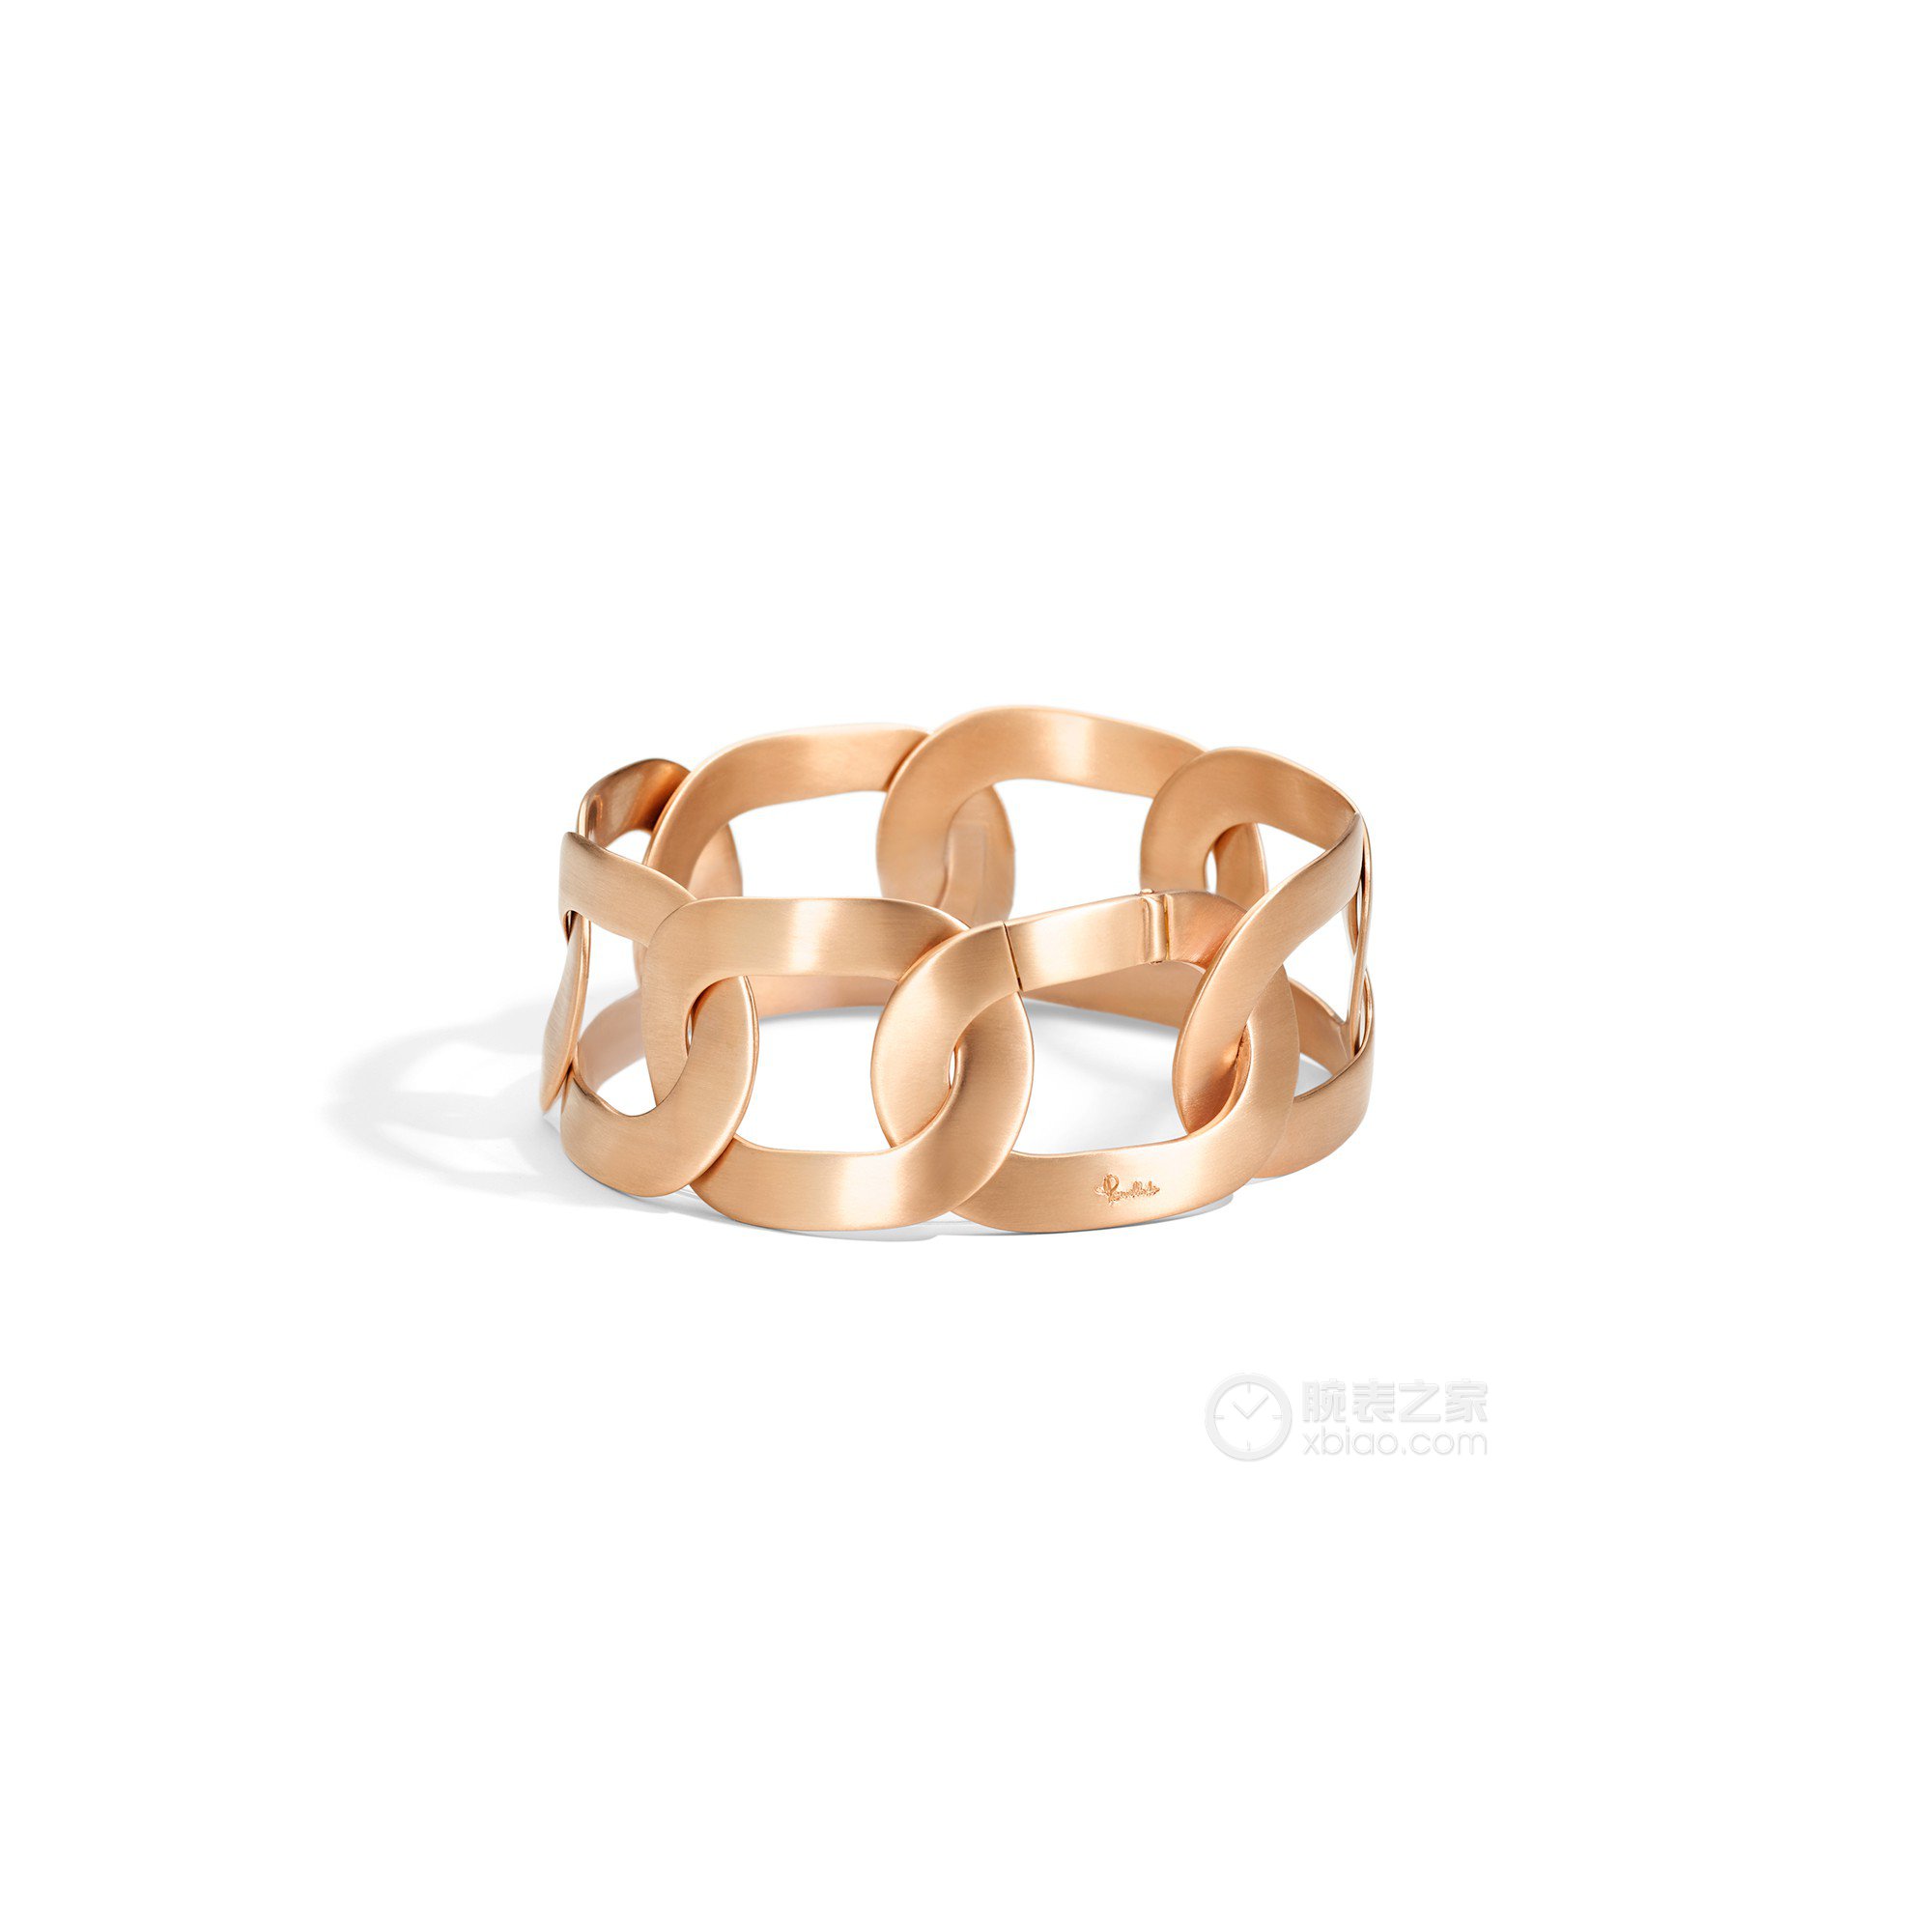 高清图|宝曼兰朵MILANO系列A.B510/B9/O7戒指图片1|腕表之家-珠宝